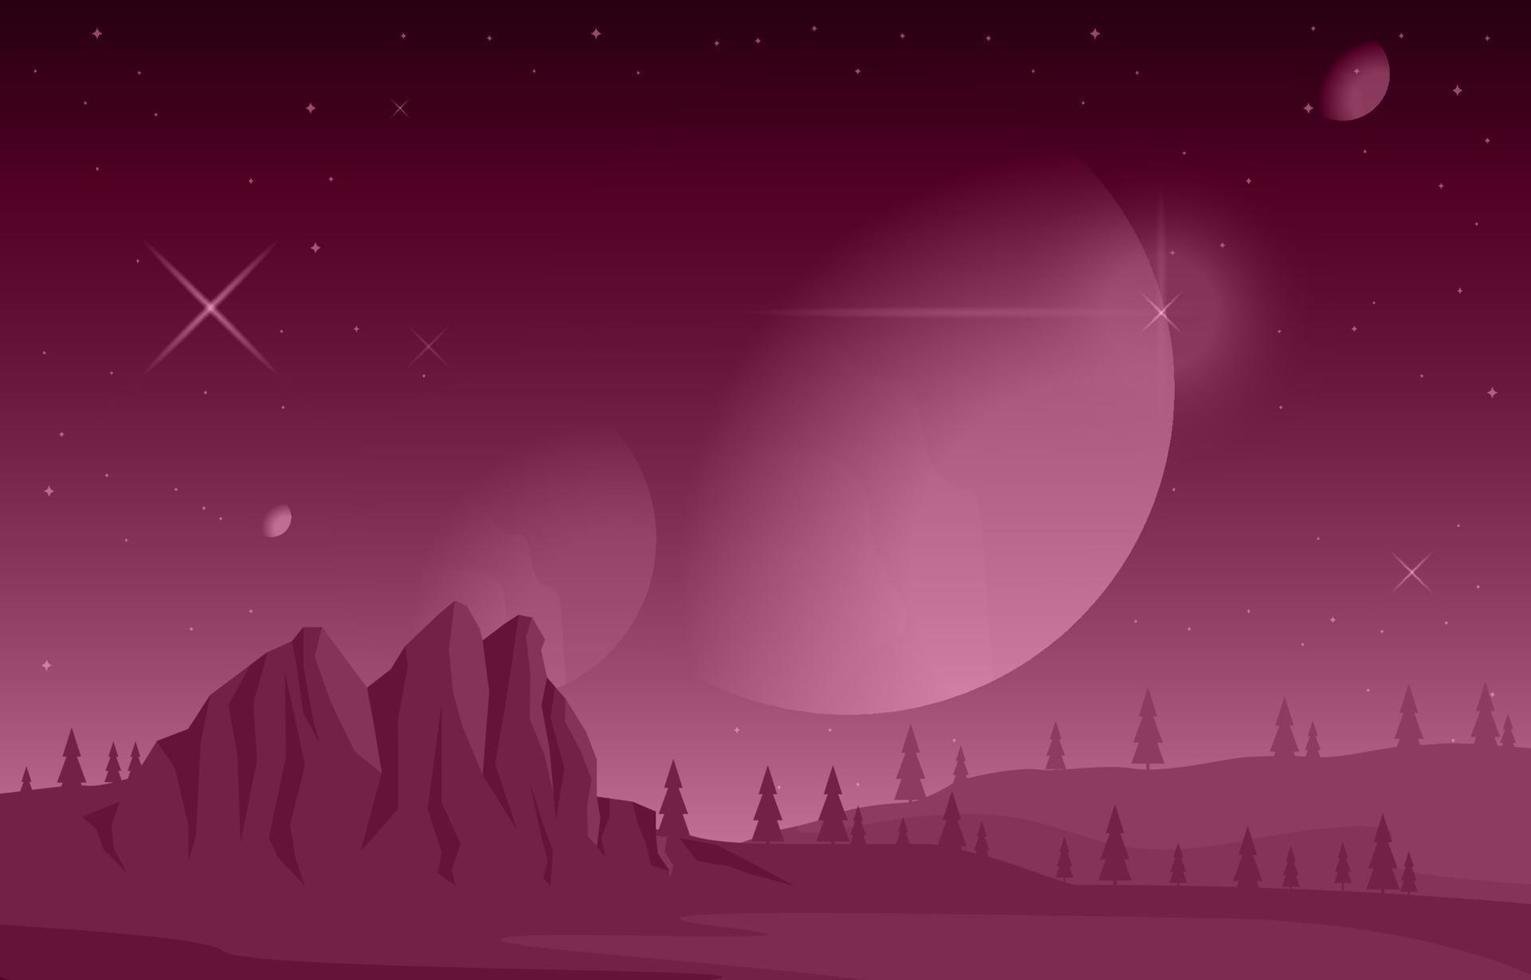 Landschaftsoberfläche der Science-Fiction-Fantasy-Planeten-Illustration vektor